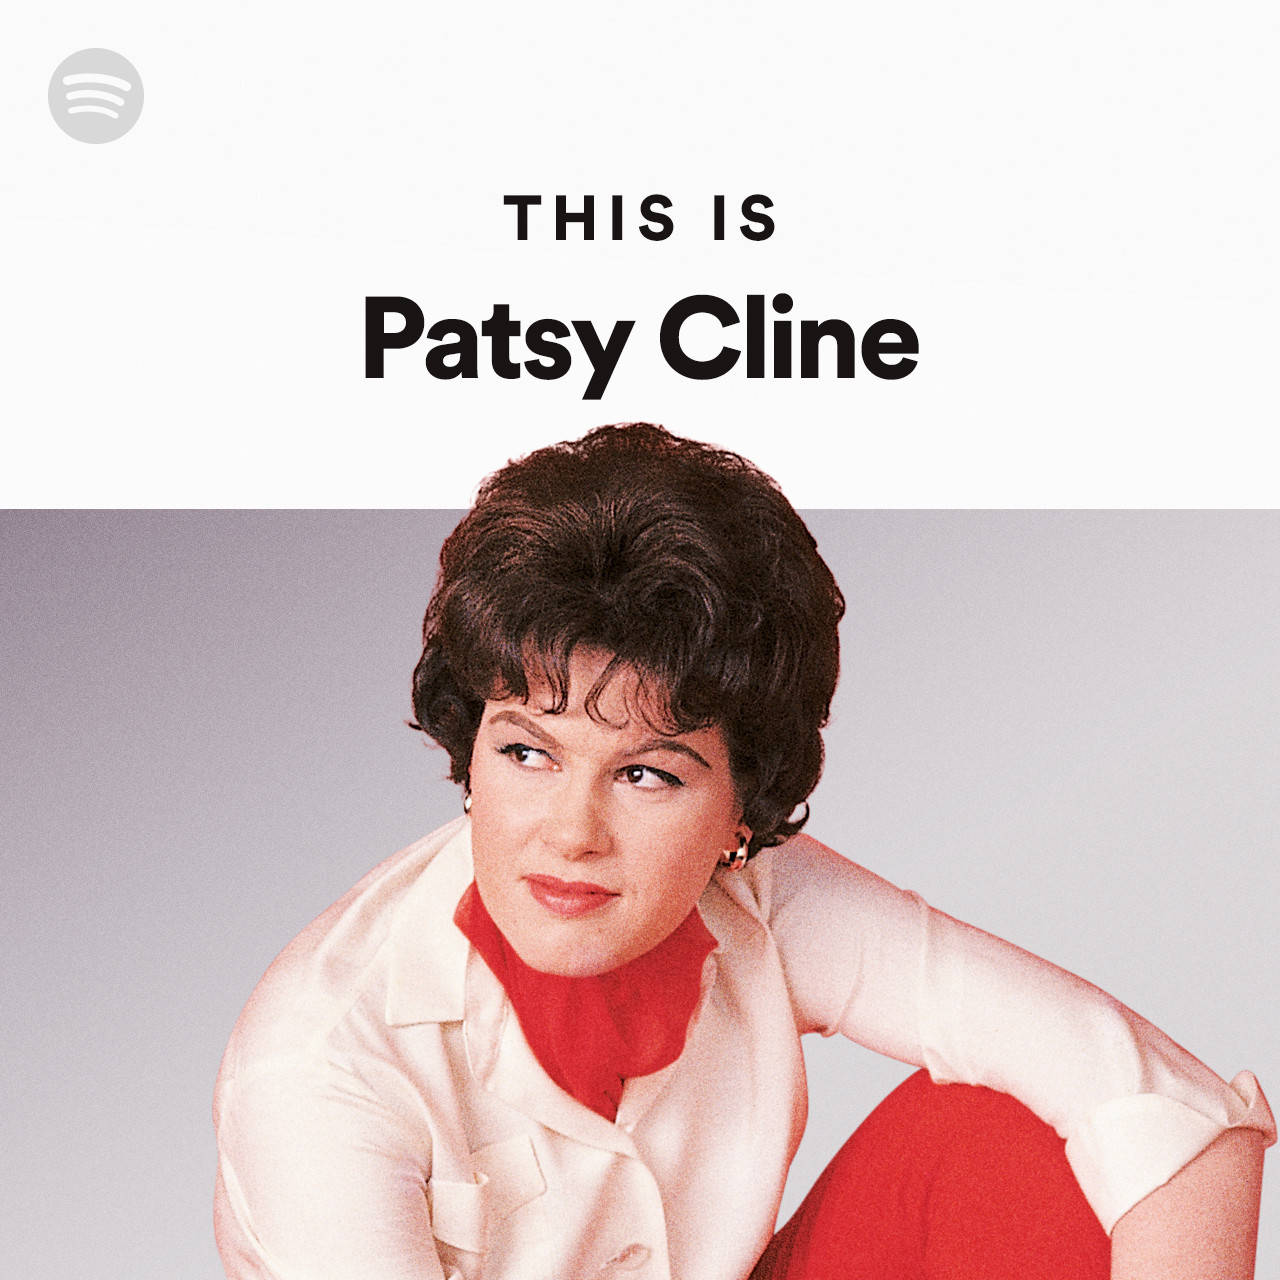 Questoè Spotify Di Patsy Cline Sfondo